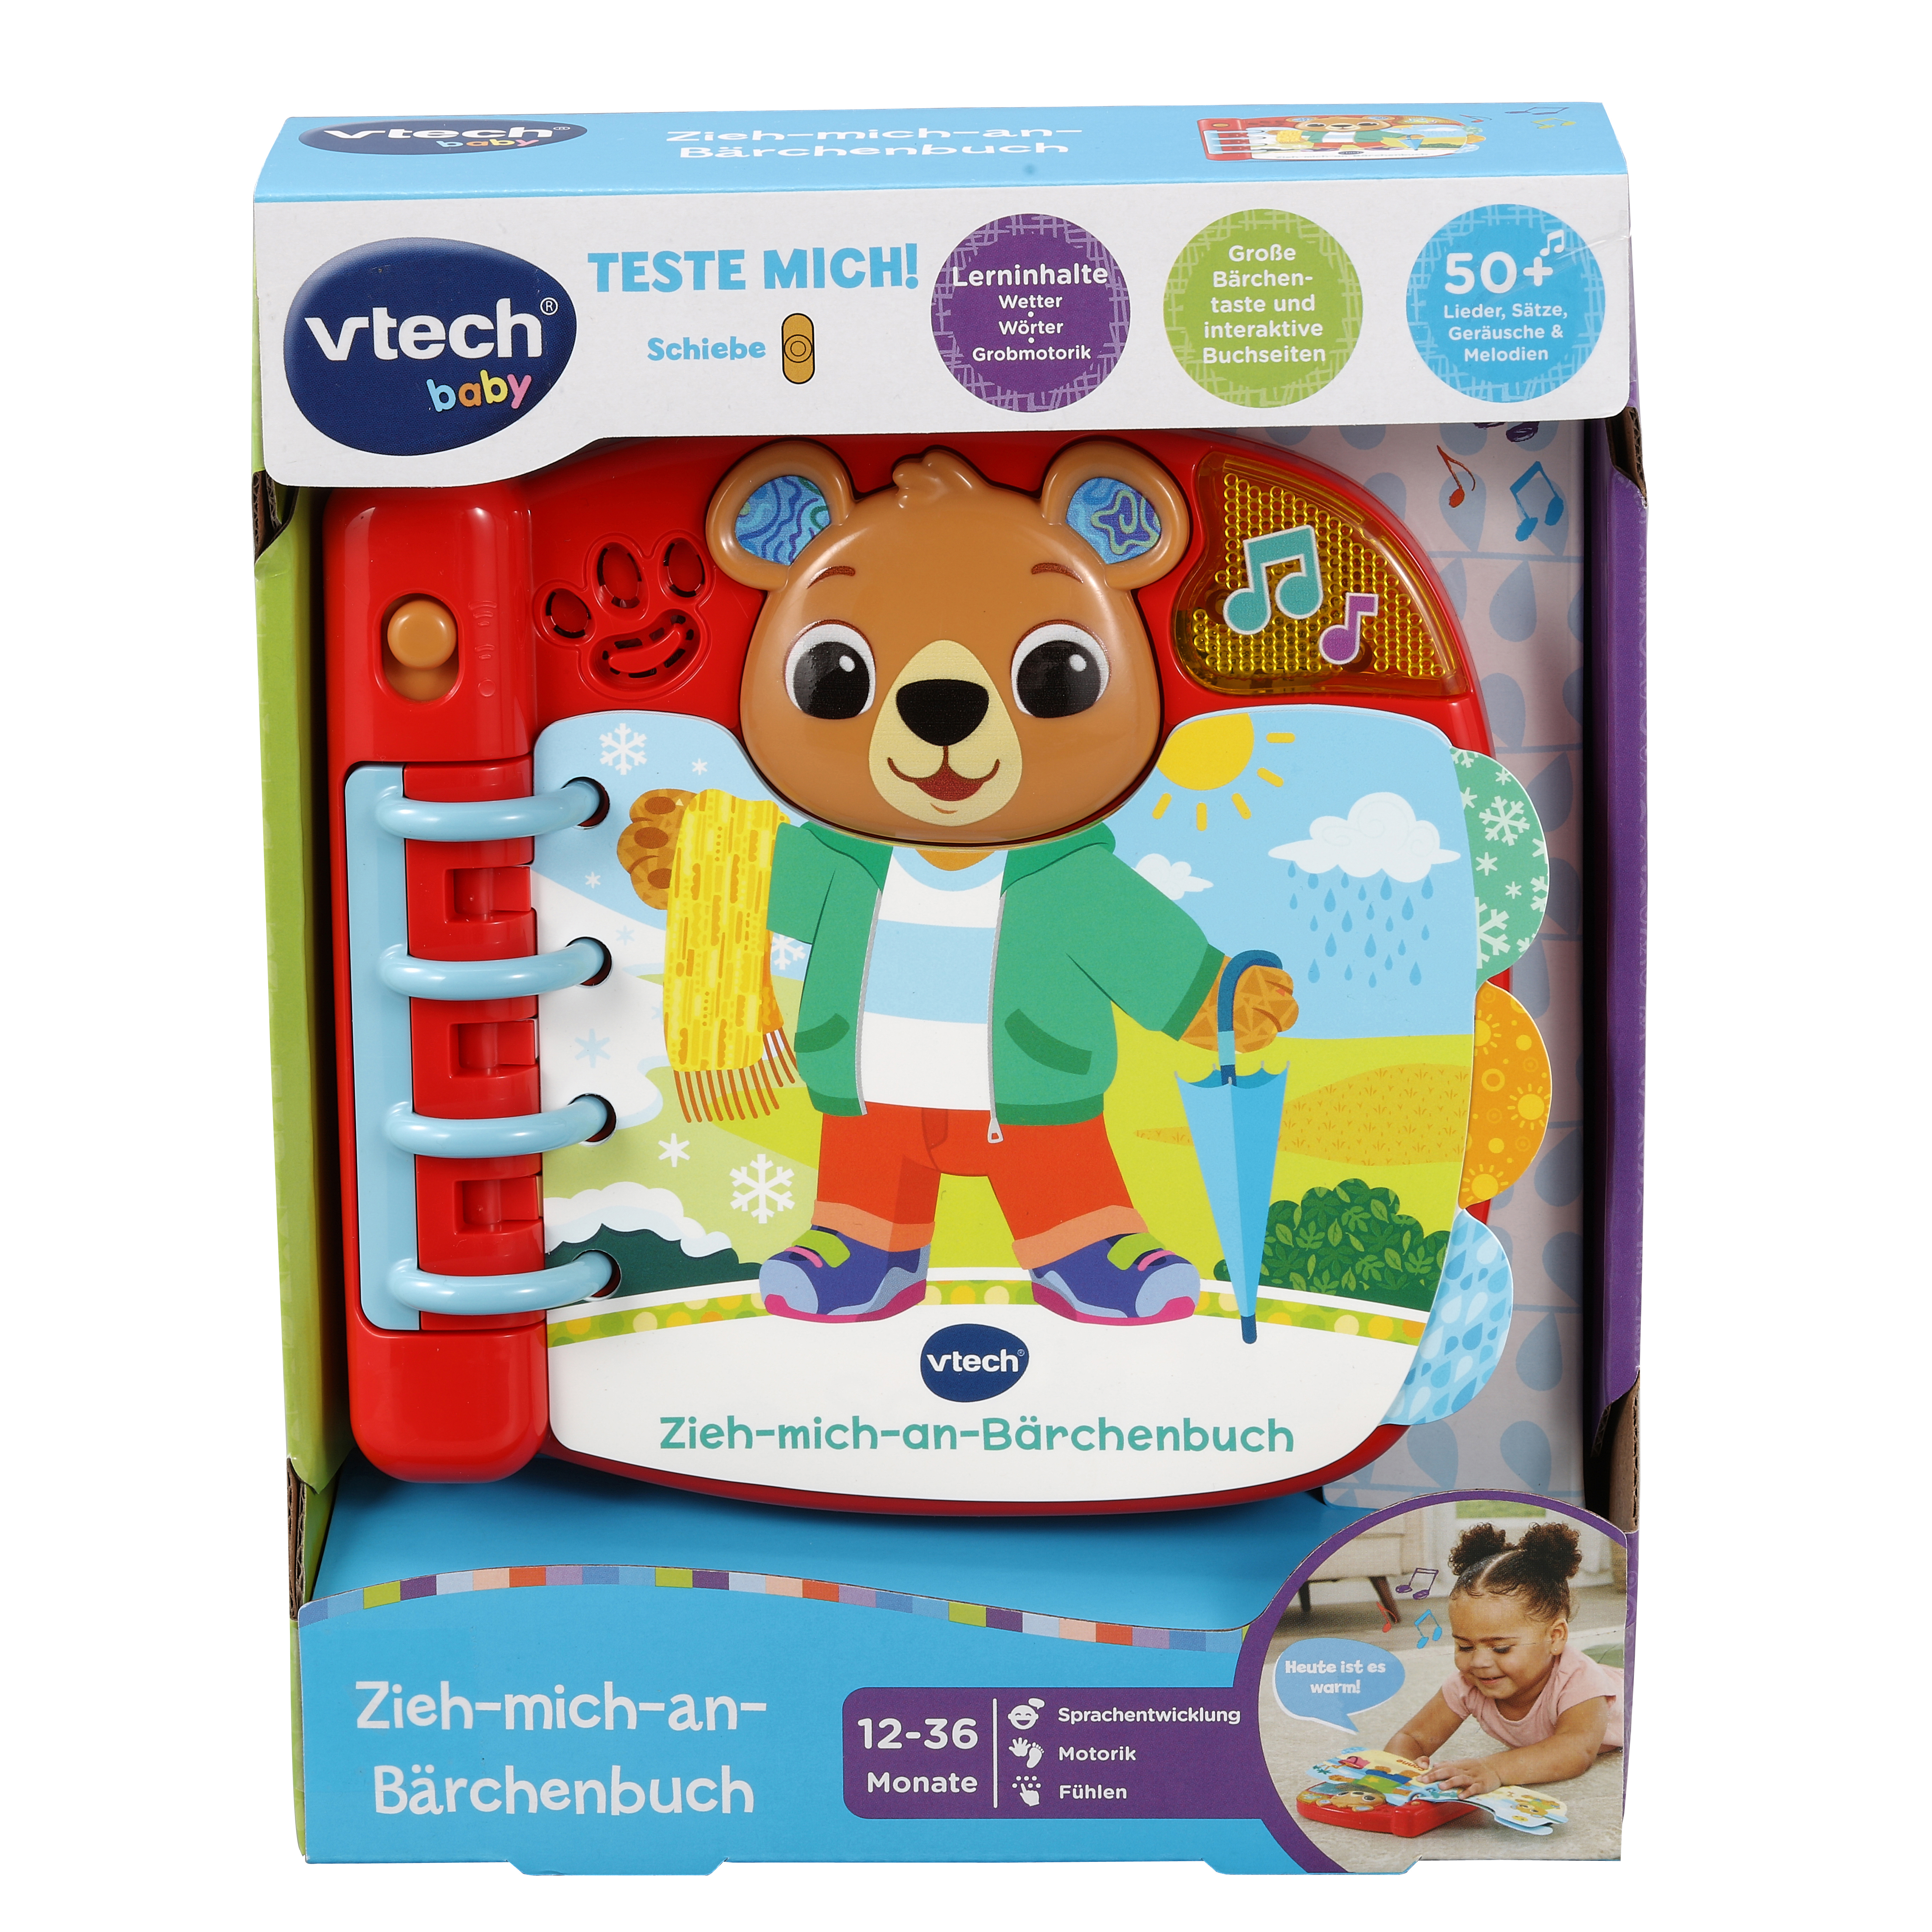 VTECH Zieh-mich-an-Bärchenbuch Spielbuch, Mehrfarbig